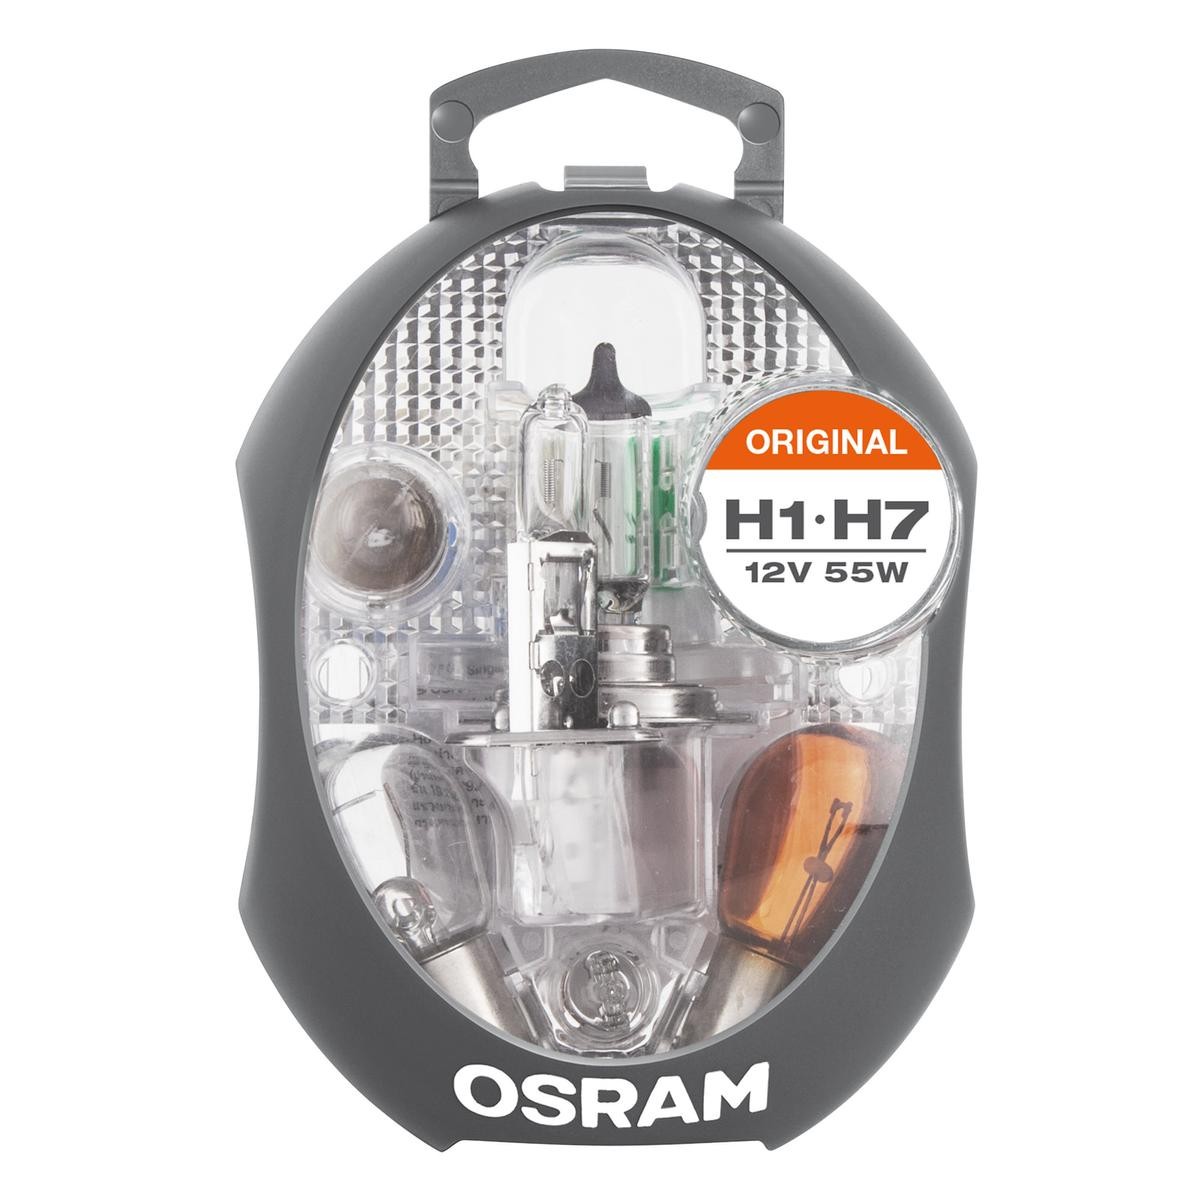 OSRAM Assortiment d'ampoules CLK H1/H7